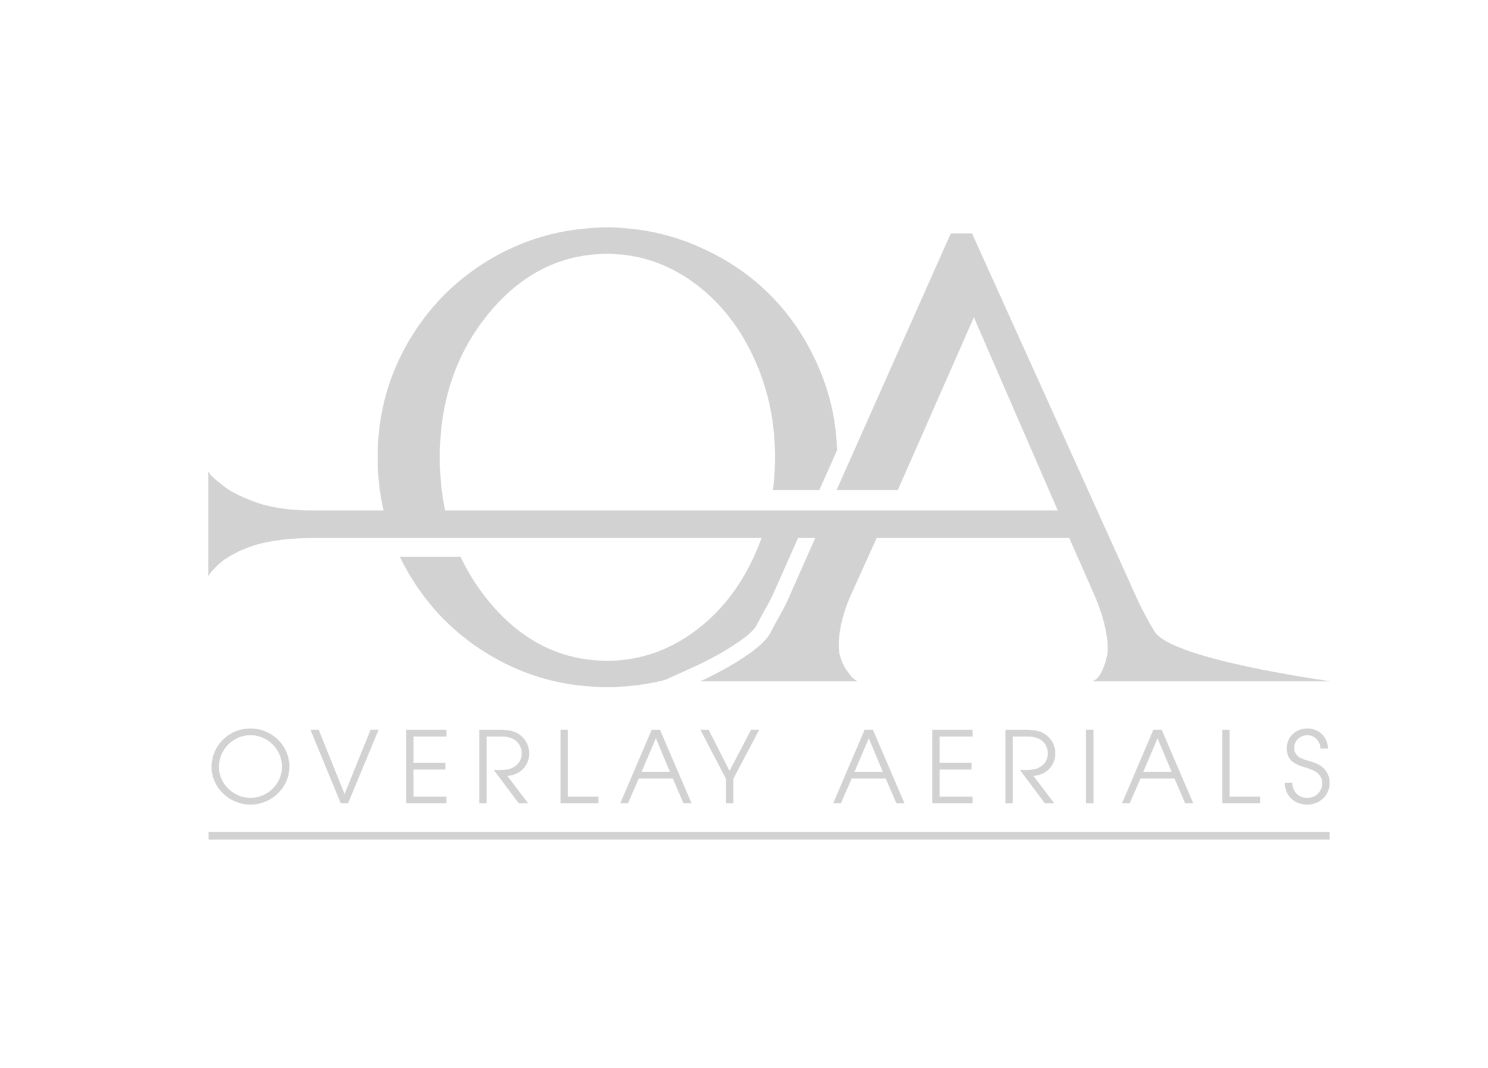 Overlay Aerials